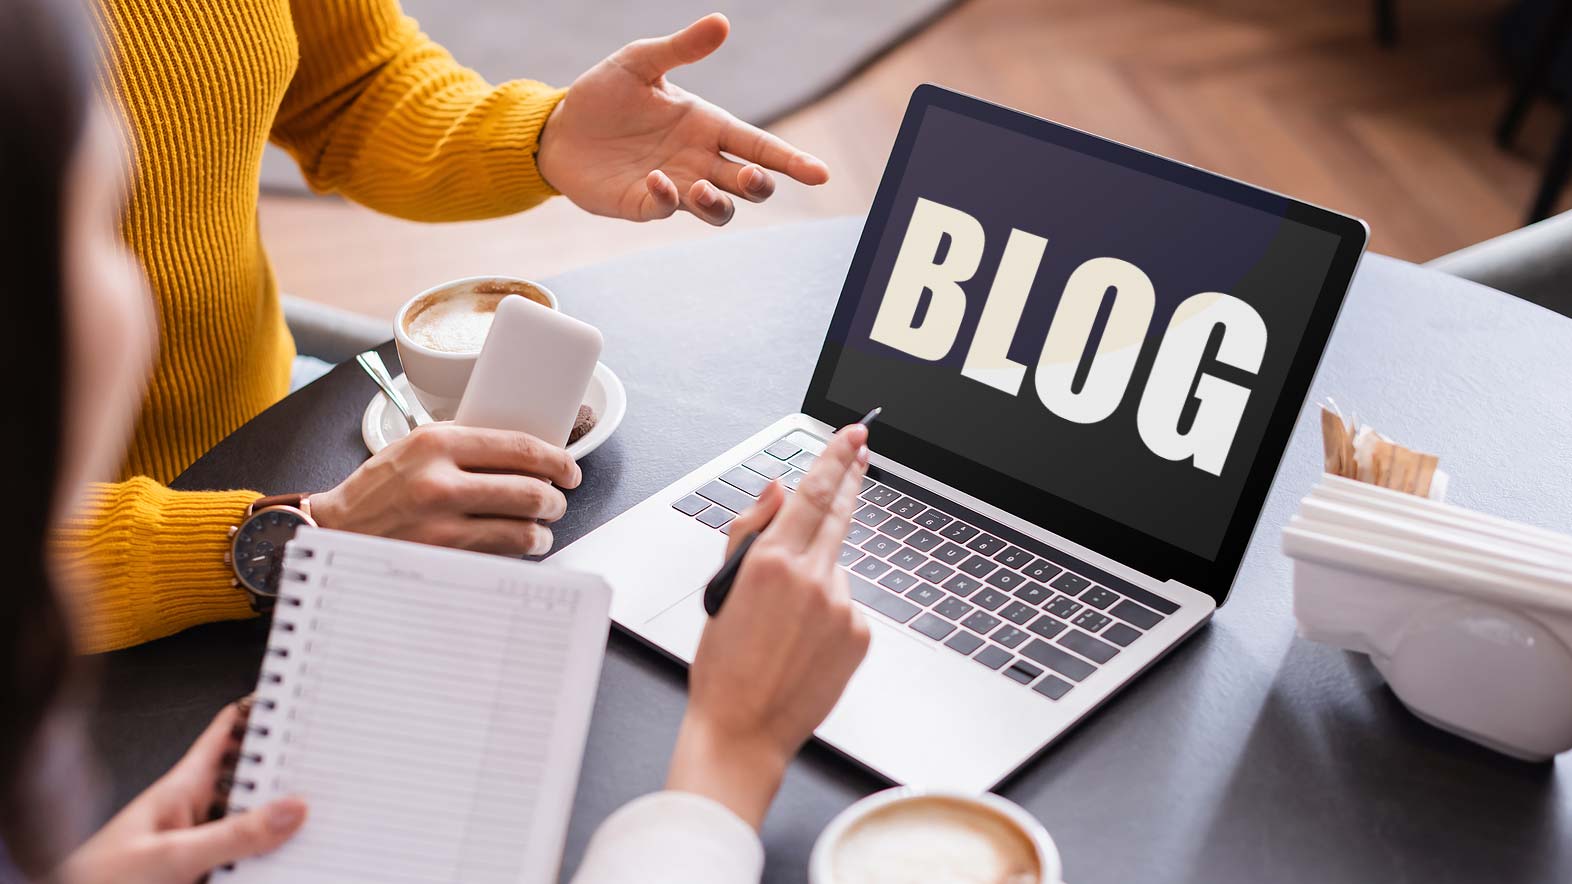 votre site e-commerce à besoin d'un blog : Blog - Web Diamond